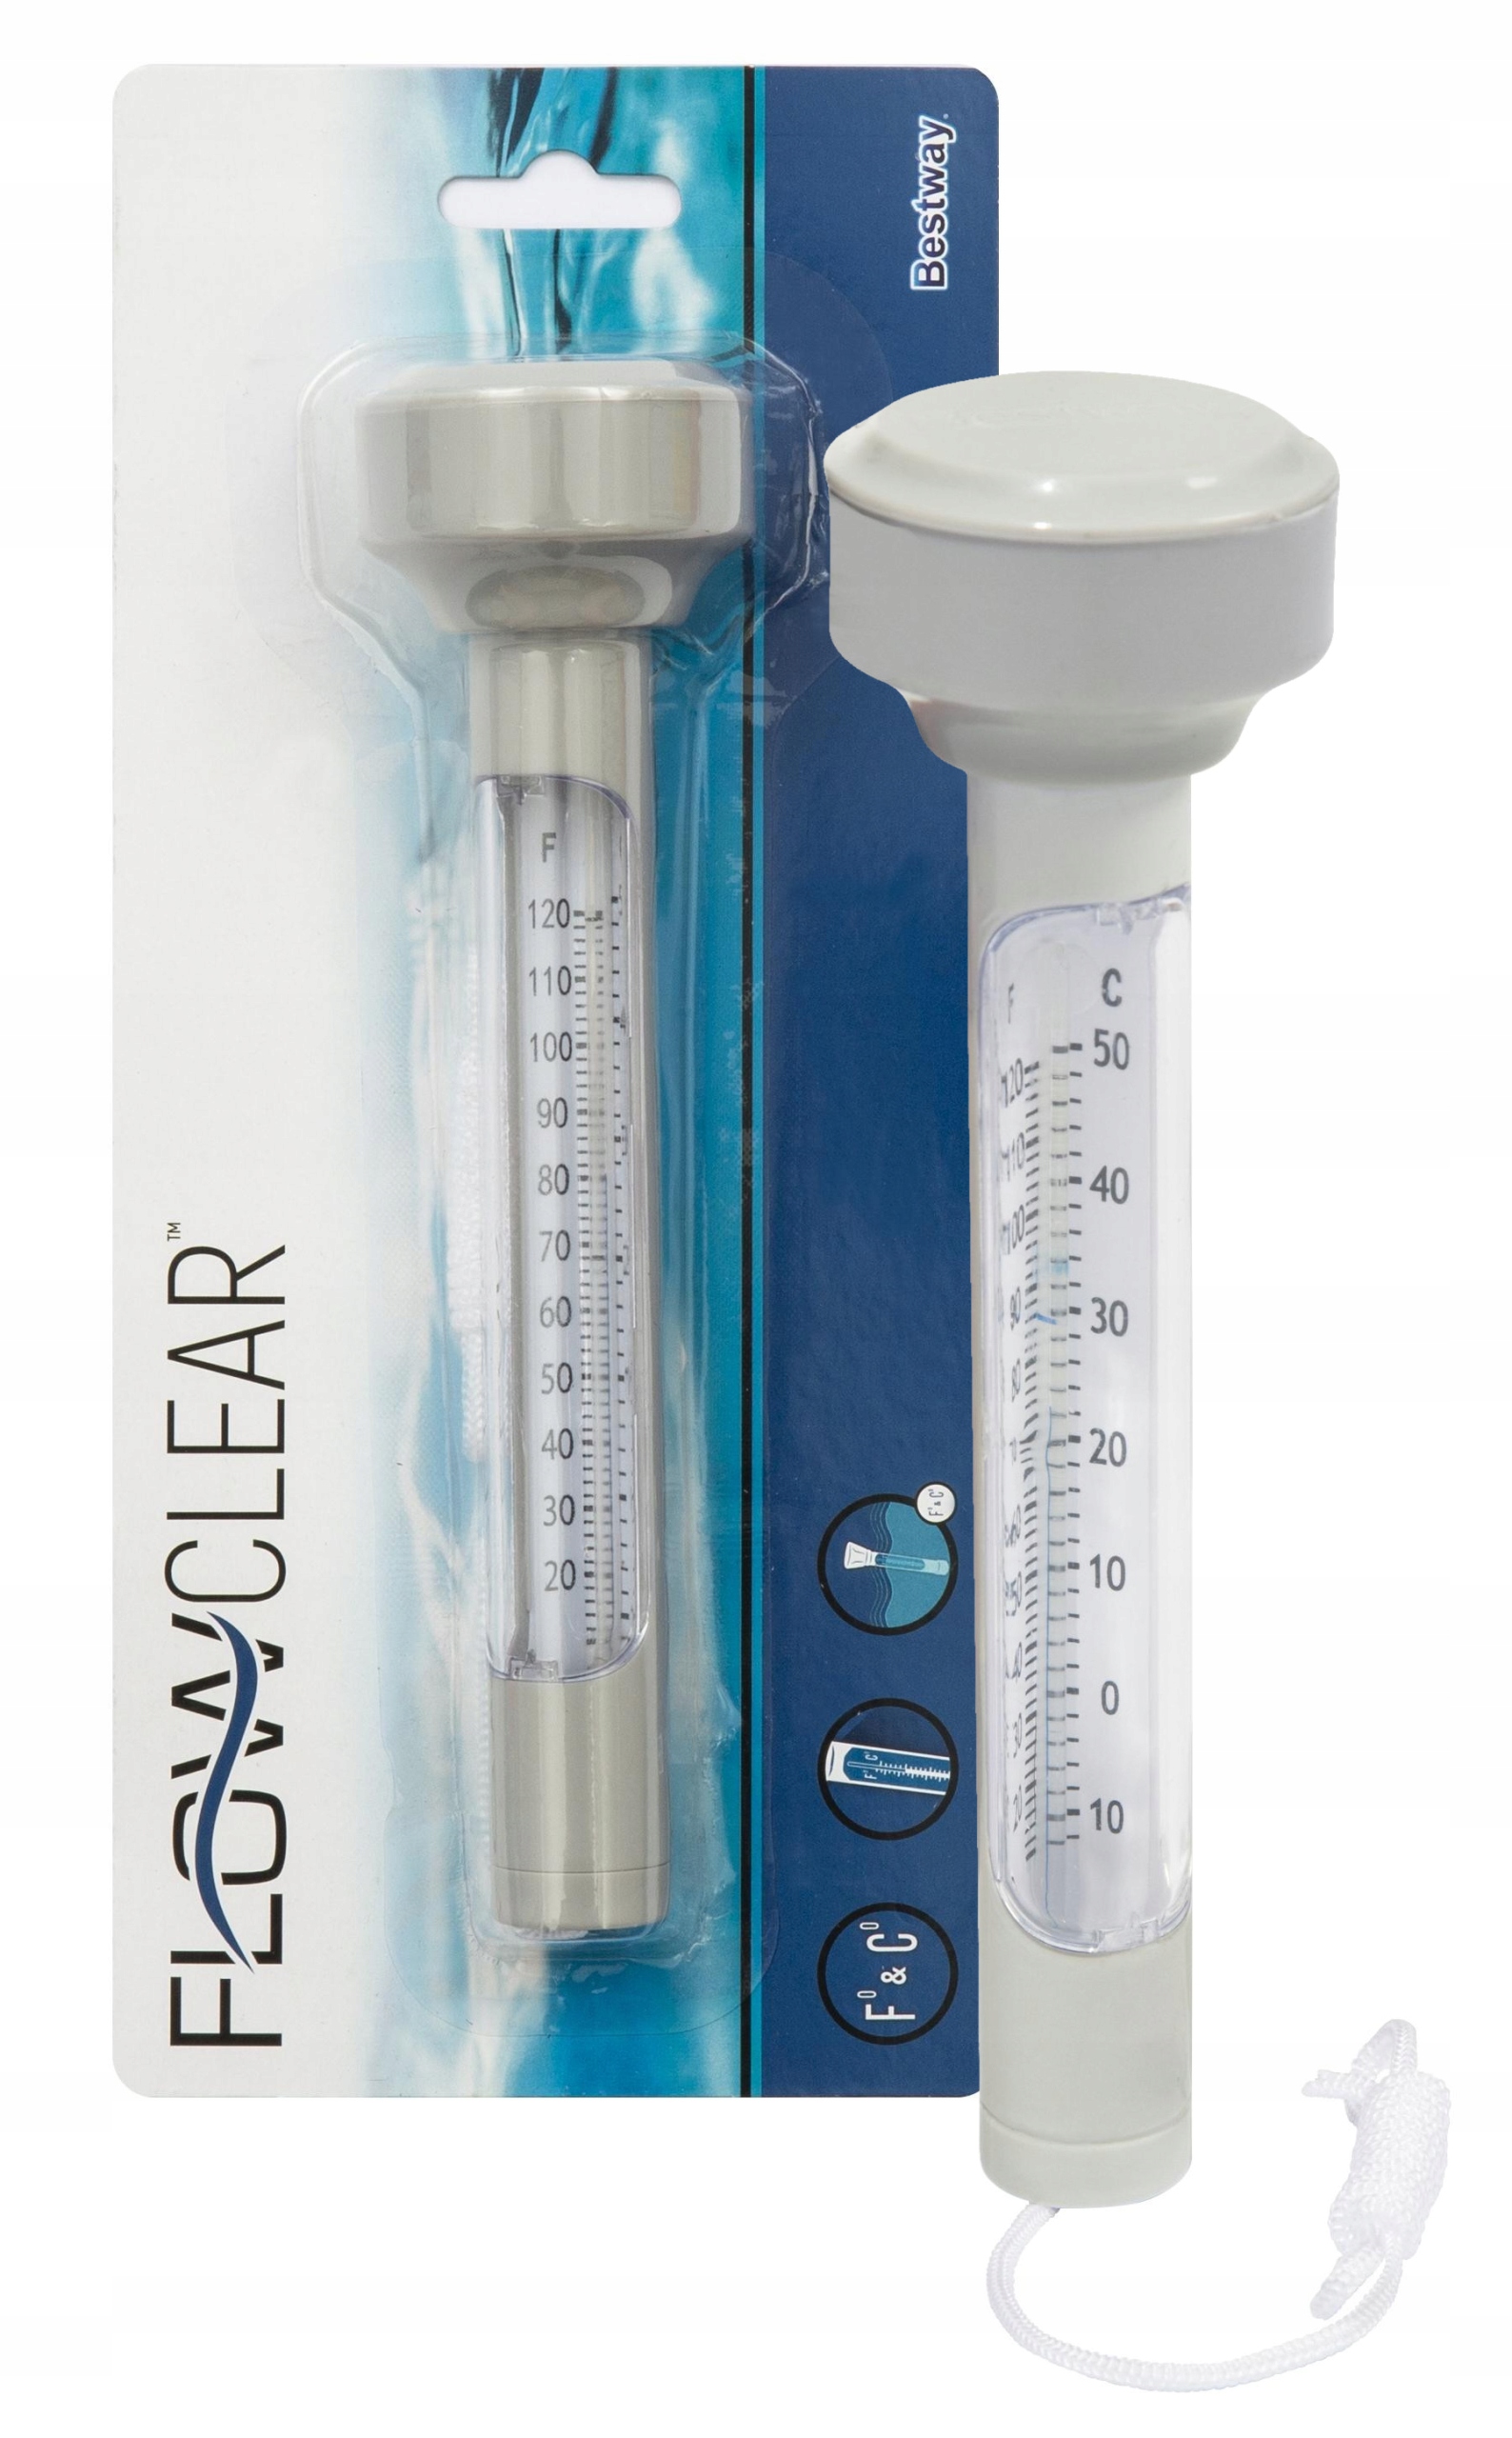 Водный термометр плавающий для измерения температуры воды в бассейне и ванной